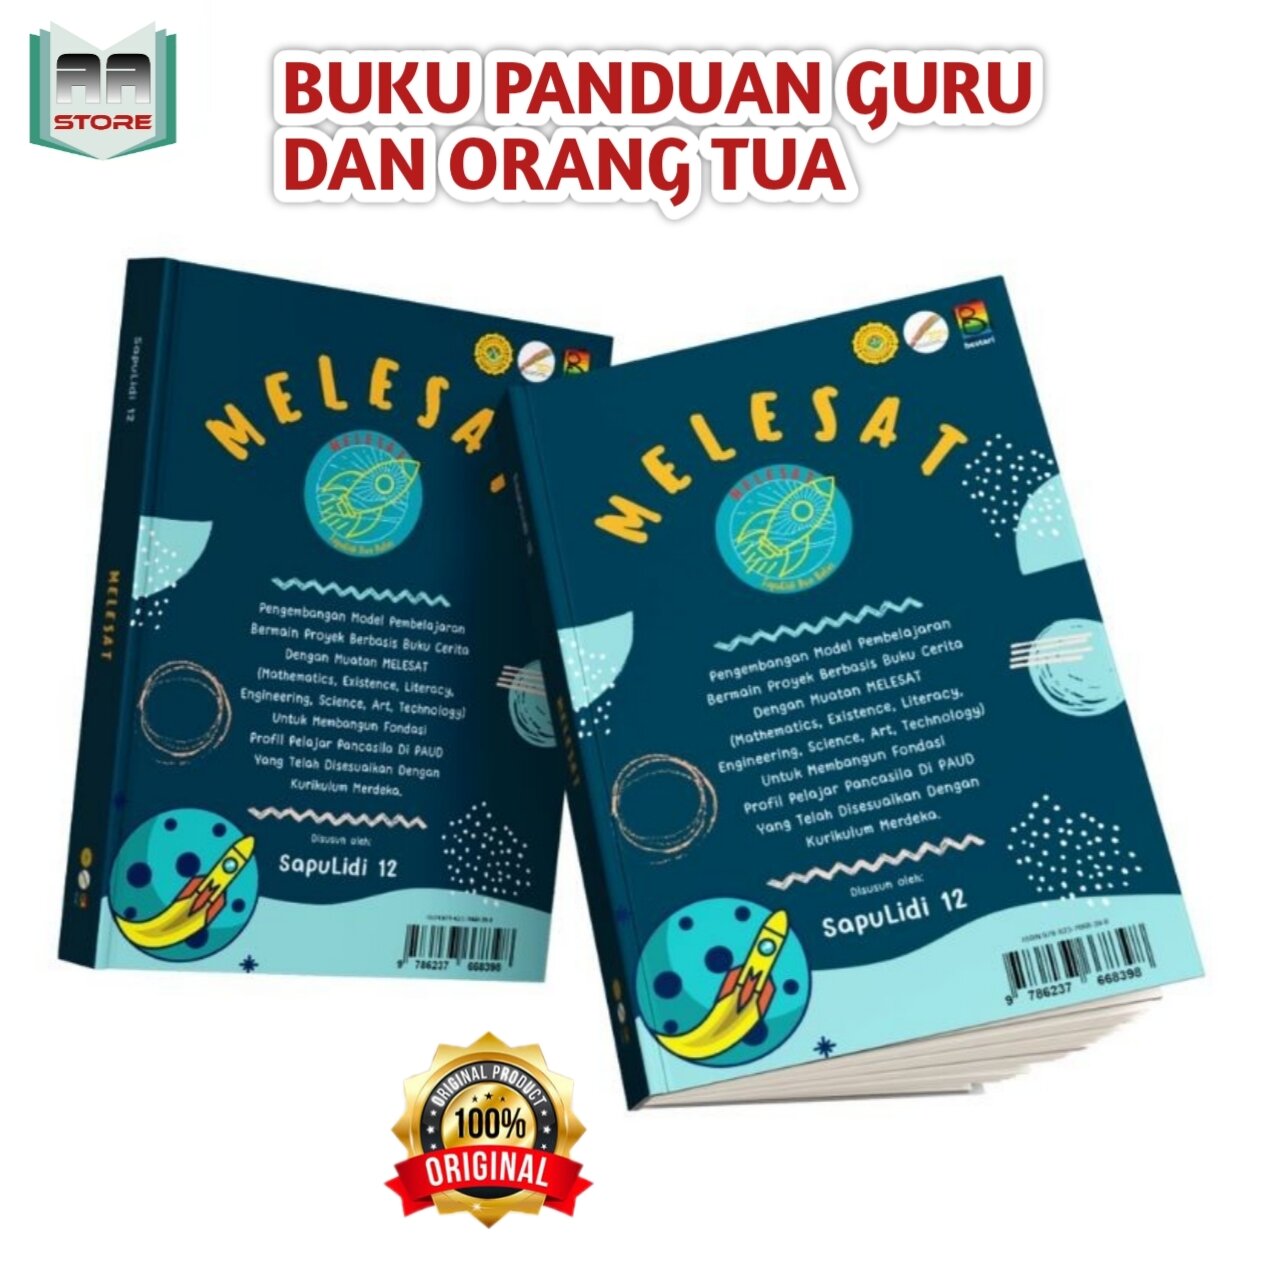 Melesat Buku Panduan Guru Kurikulum Merdeka Belajar Paud Sapulidi 12 Lazada Indonesia 3558